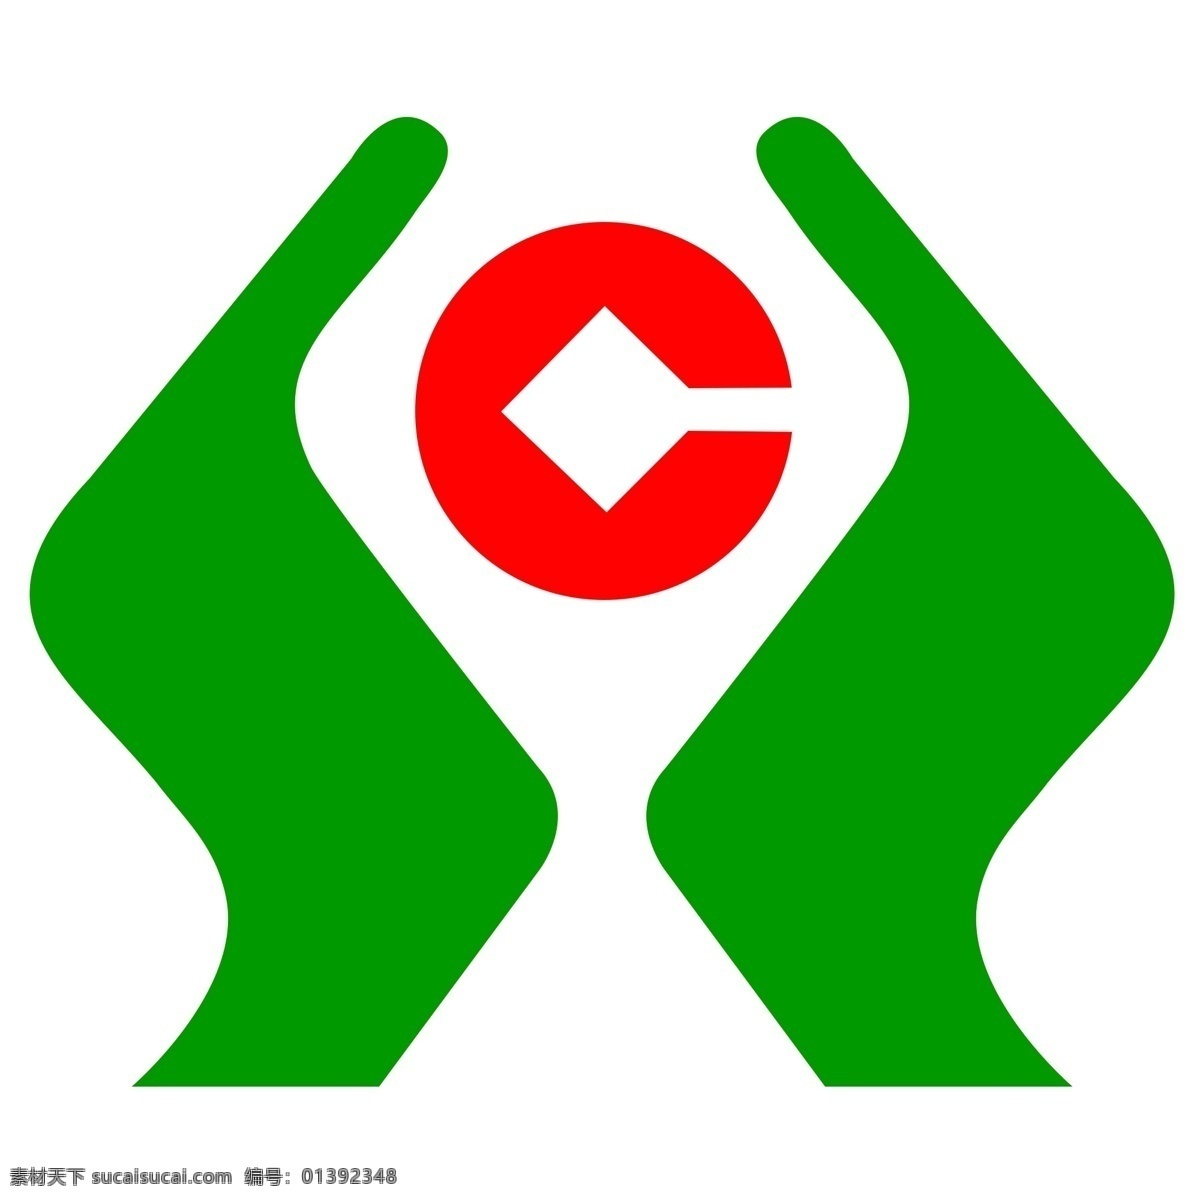 信用社 标志 高清 透明 背景 信用社标志 农村信用社 logo 分层